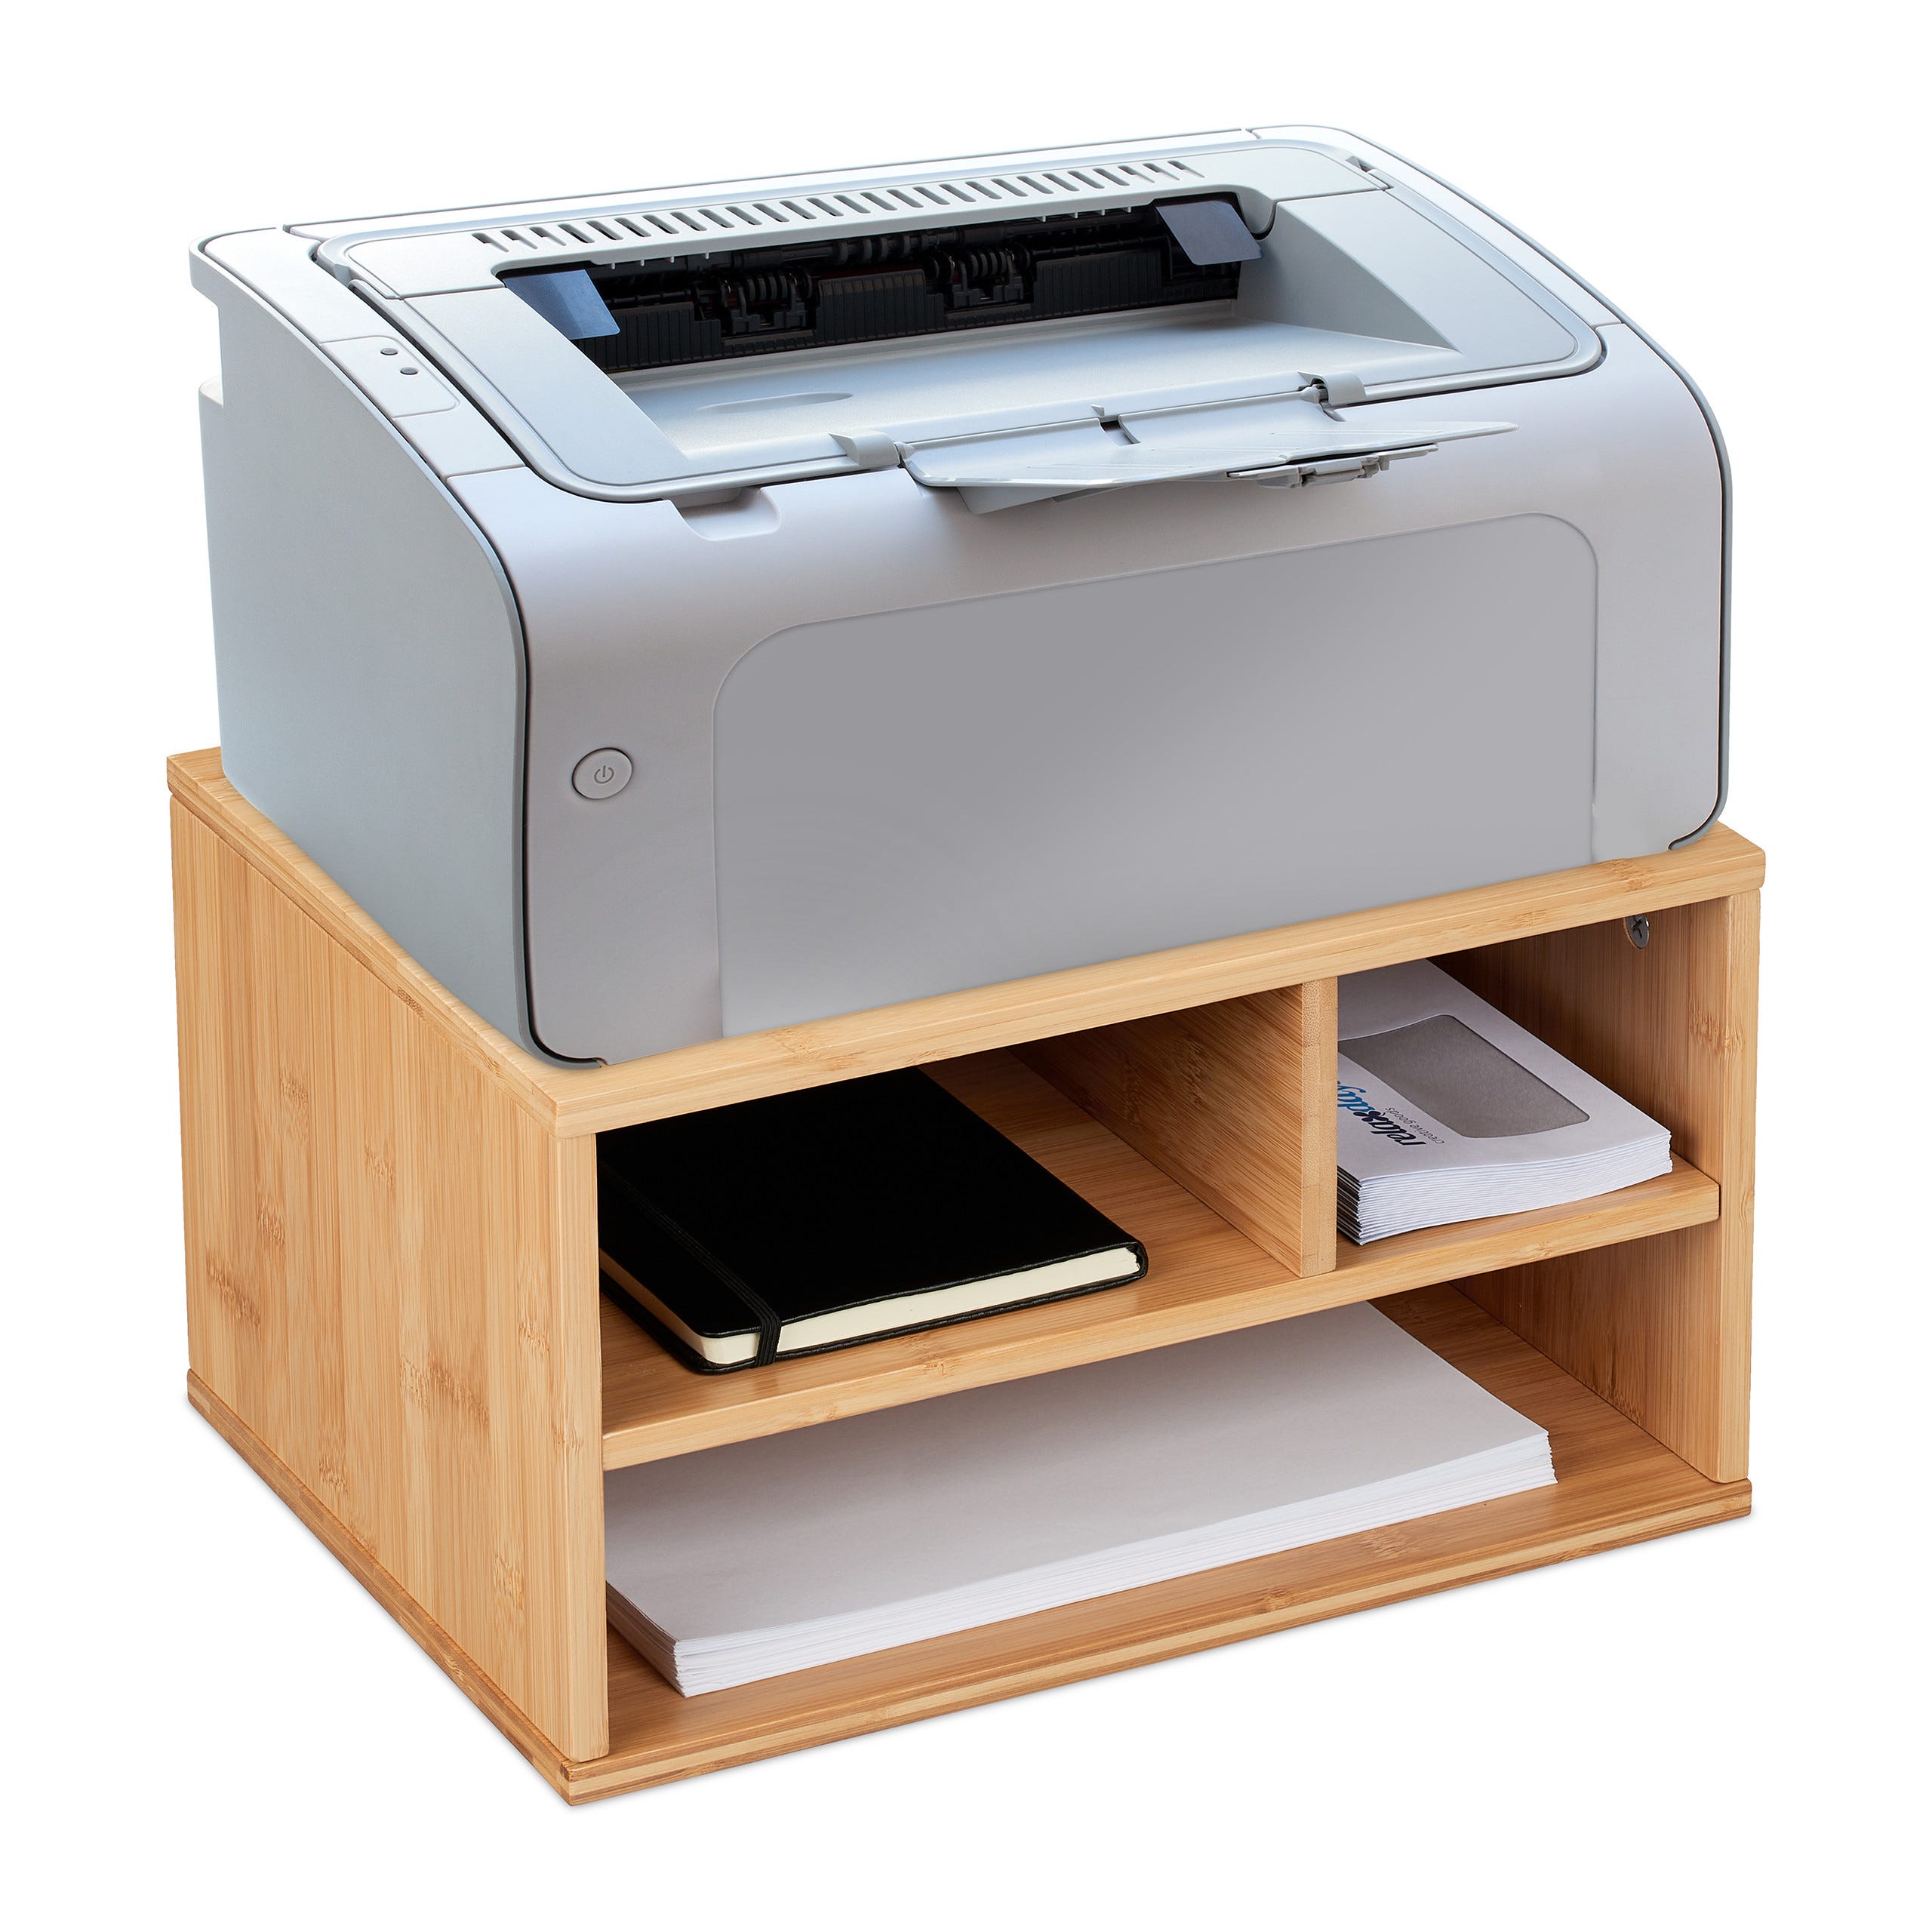 Relaxdays Support imprimante pour bureau, 3 compartiments